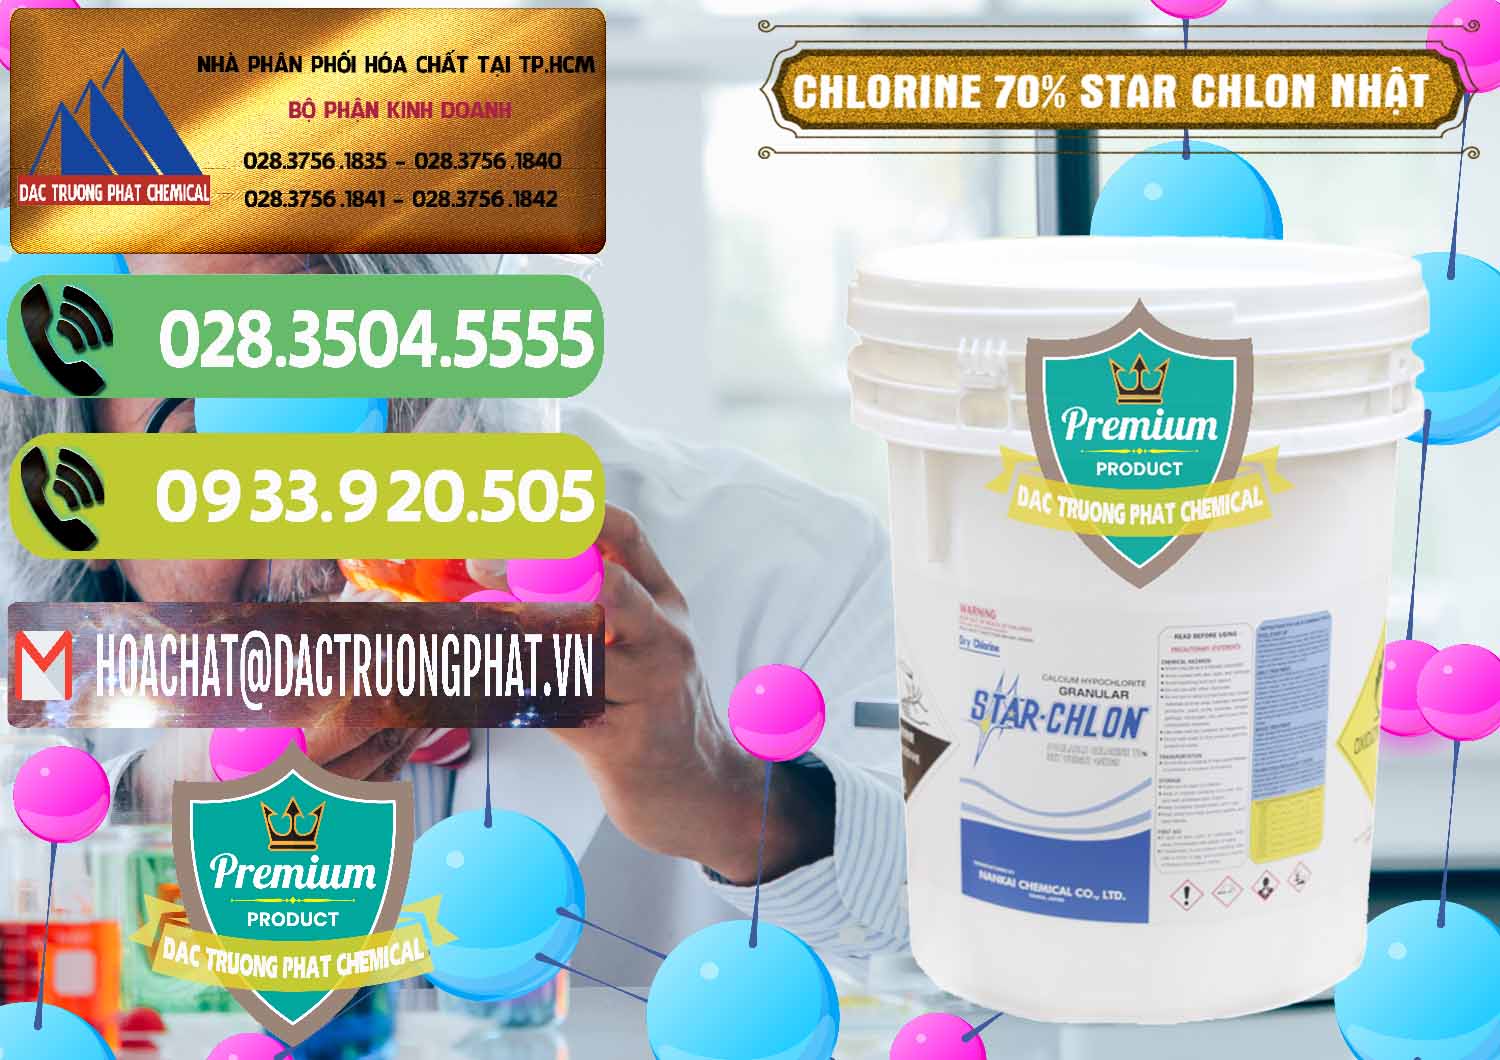 Nơi cung cấp và bán Clorin – Chlorine 70% Star Chlon Nhật Bản Japan - 0243 - Nhà cung cấp - bán hóa chất tại TP.HCM - hoachatmientay.vn